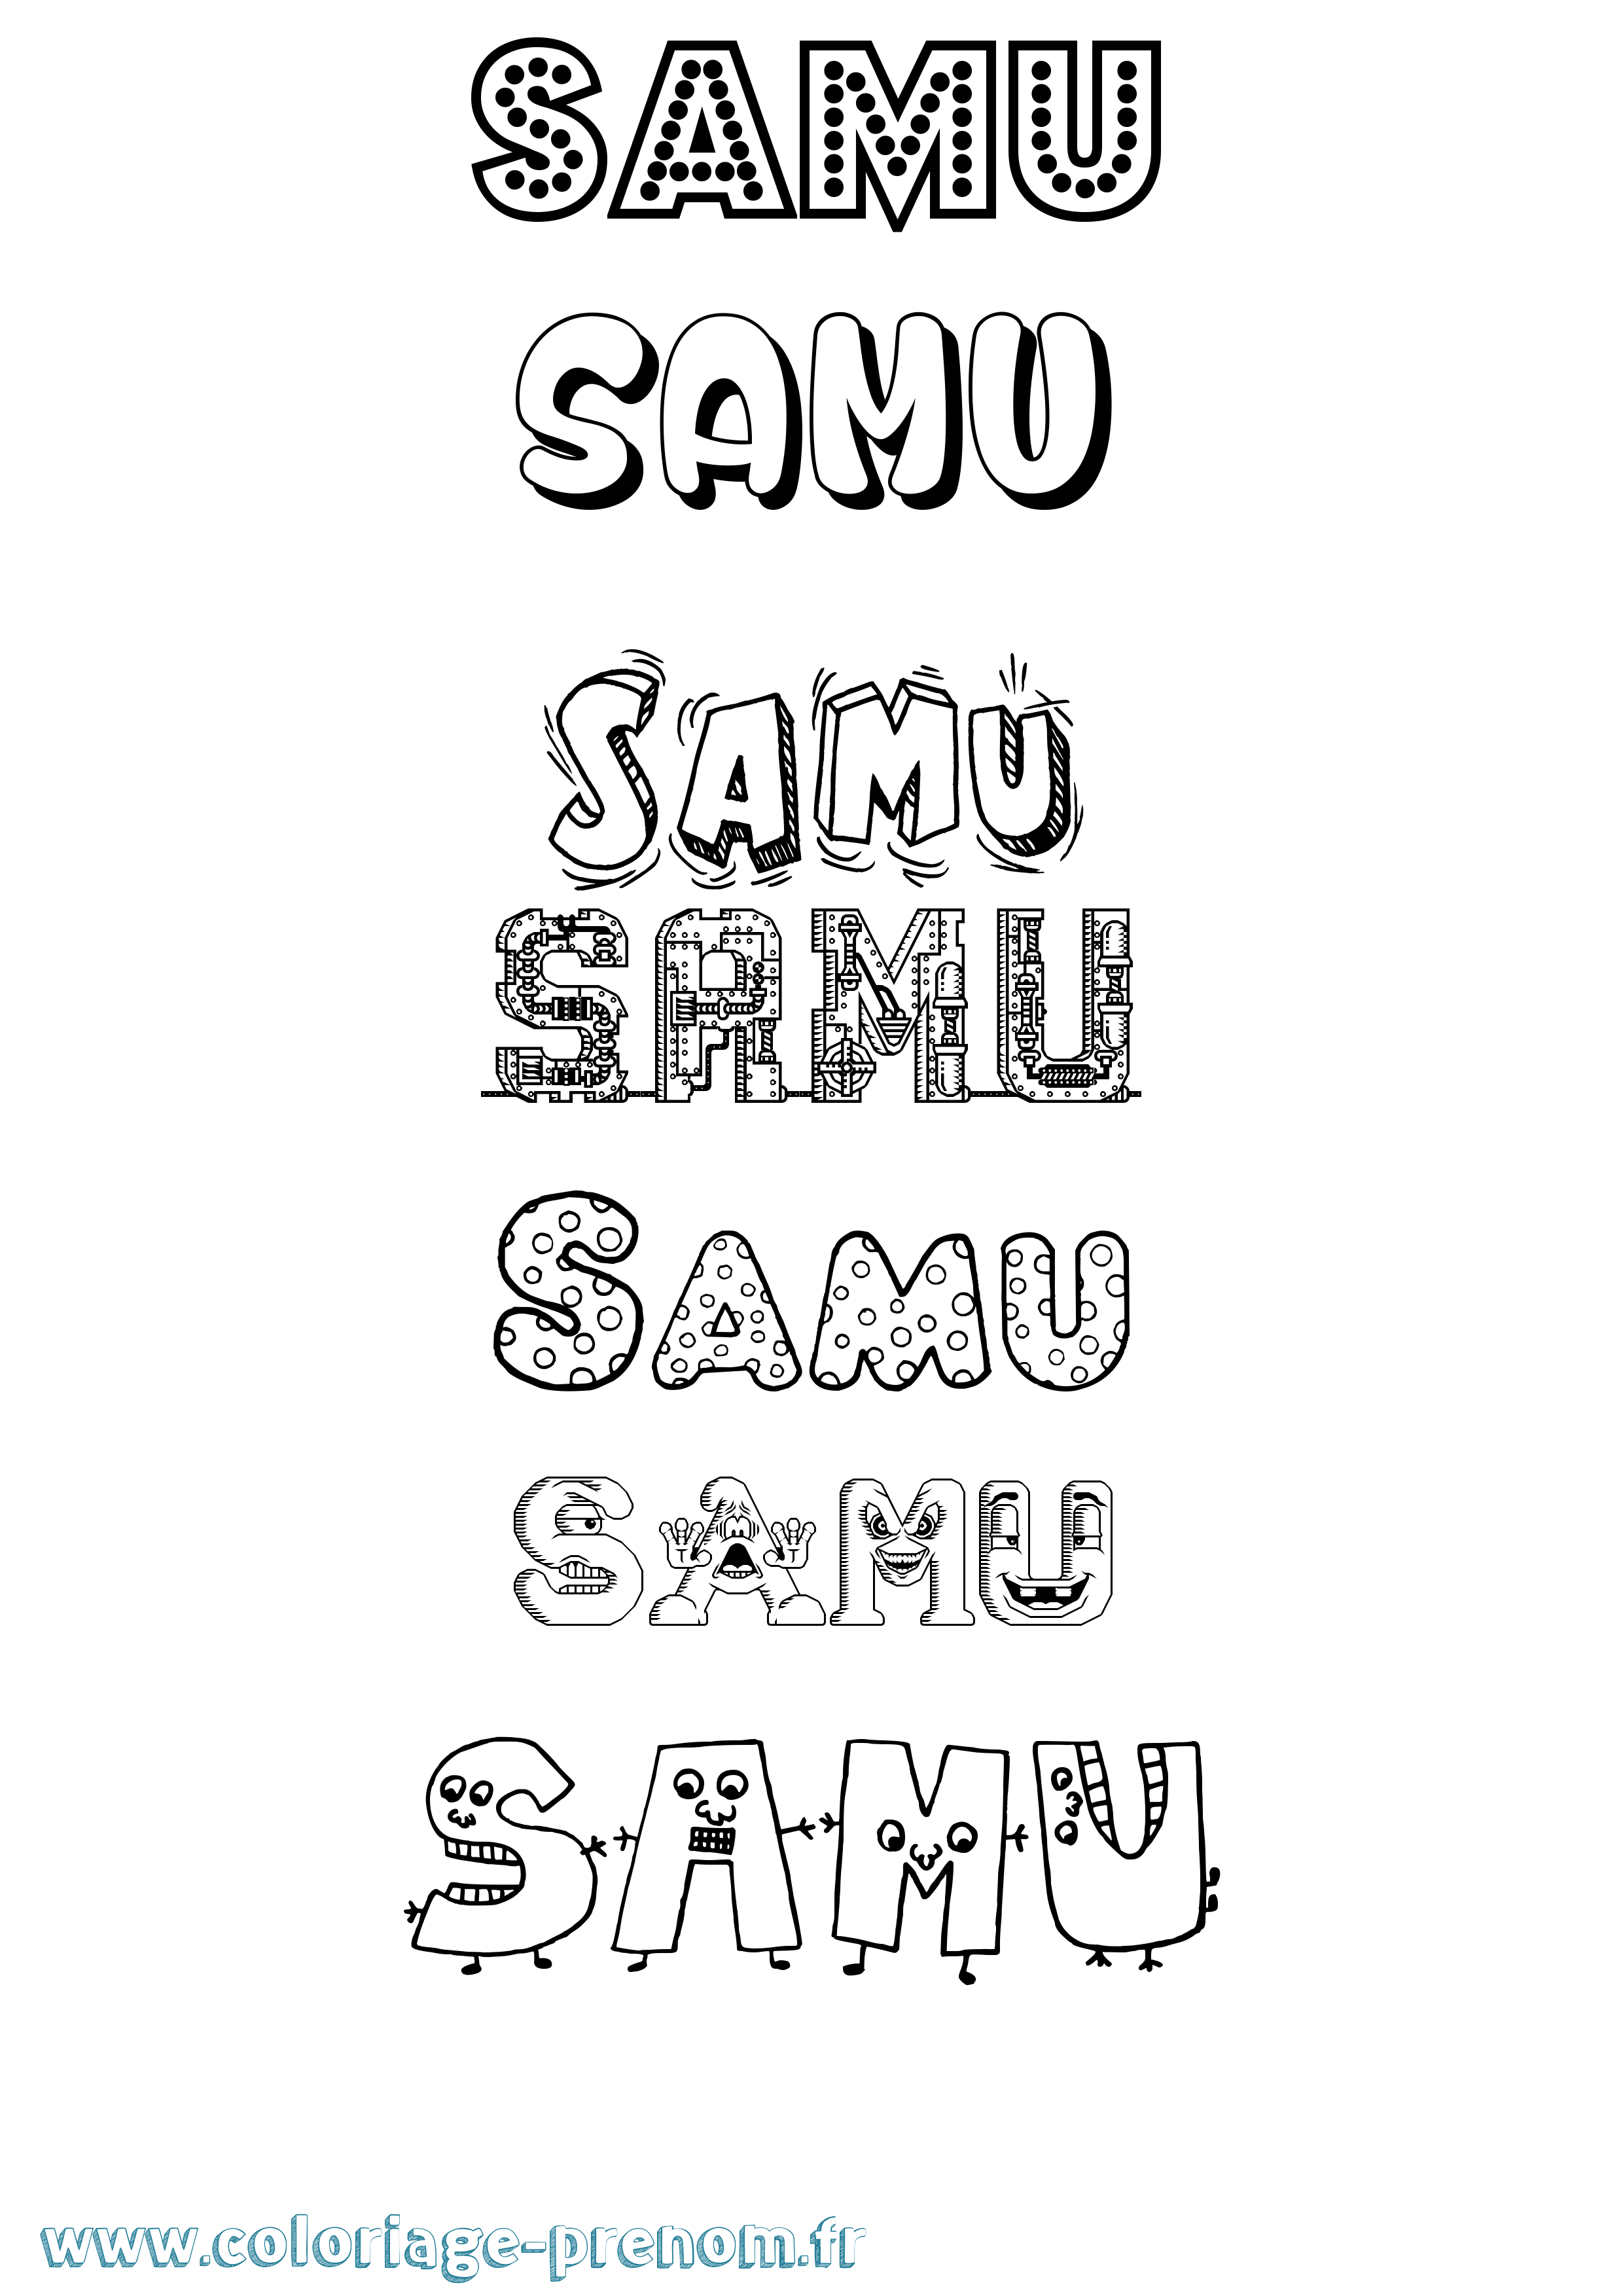 Coloriage prénom Samu Fun